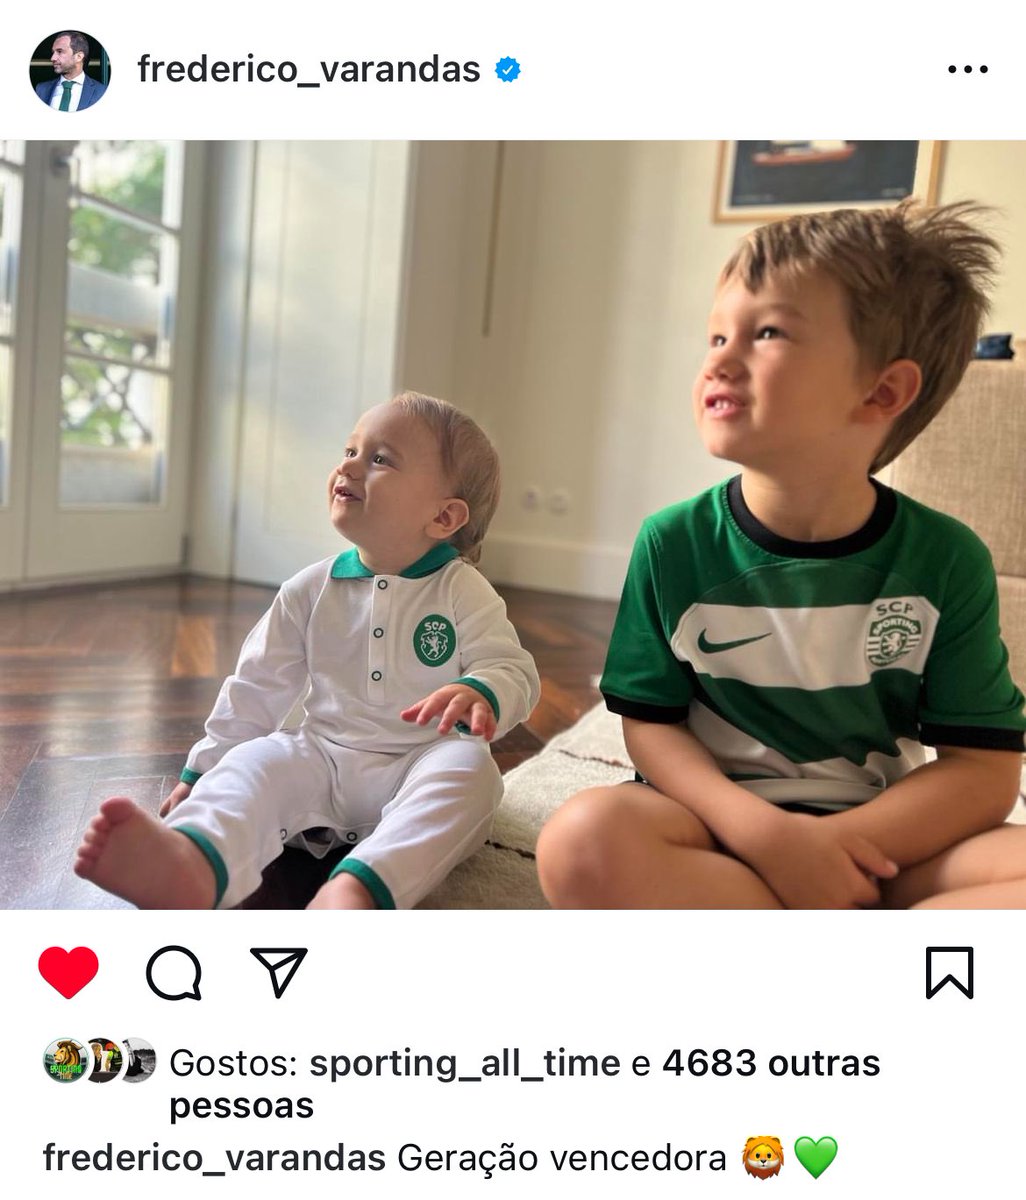 📲 Frederico Varandas publicou uma foto dos seus 2 filhos: “Geração vencedora 🦁💚”